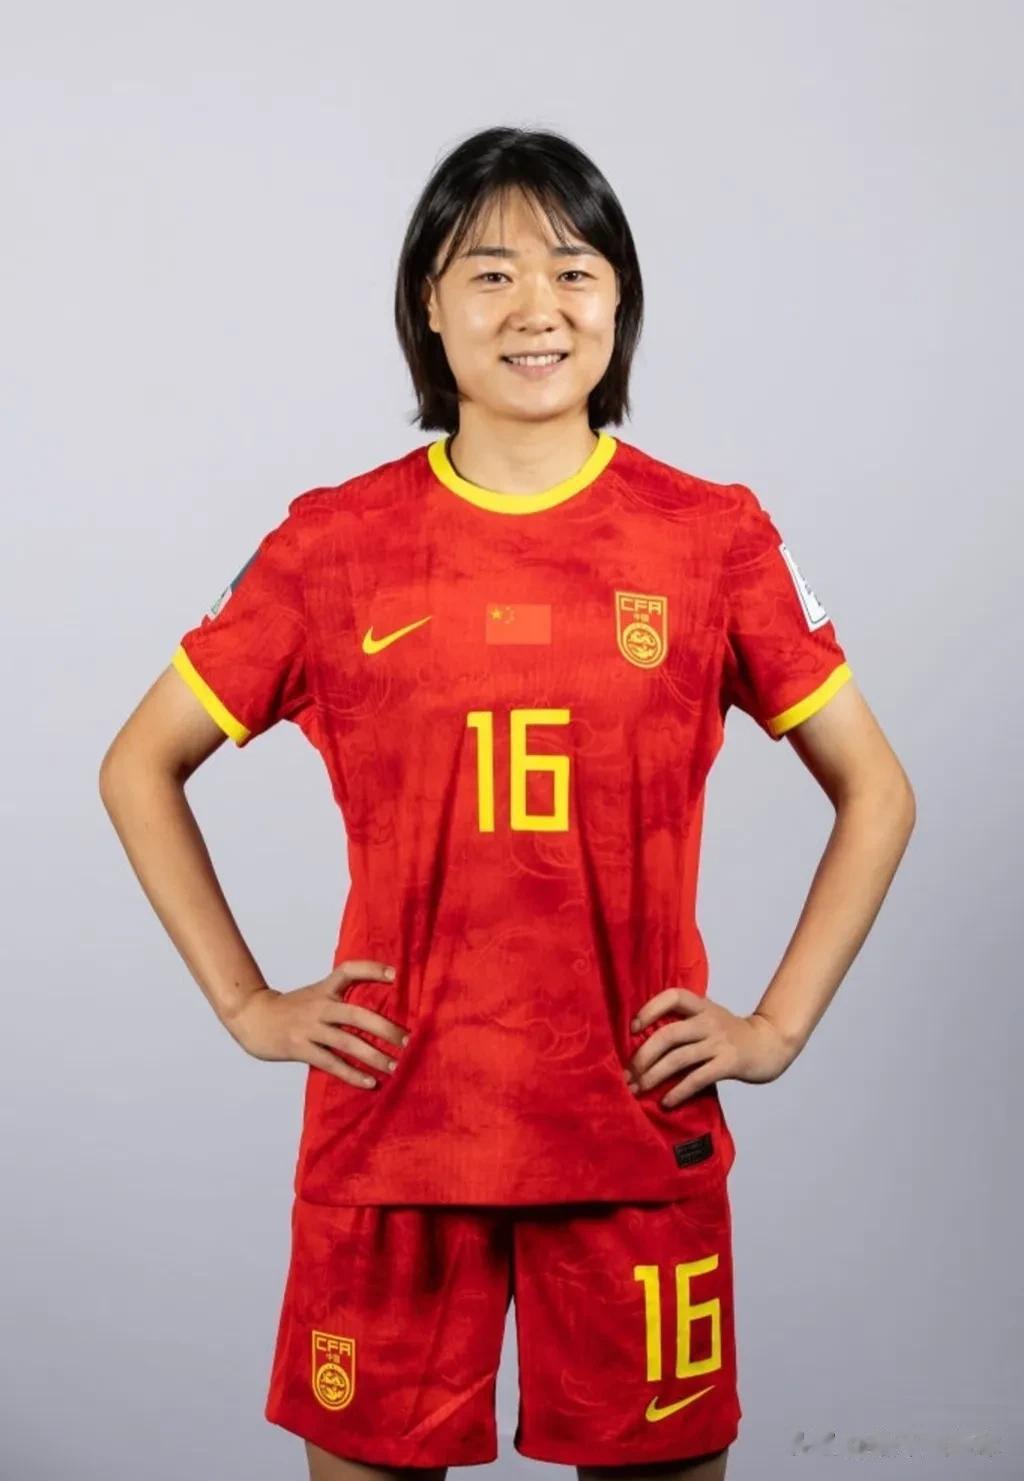 插播一条足球，给中国姑娘加油！祝中国姑娘22号世界杯首场凯旋！

分享一下姑娘们(2)